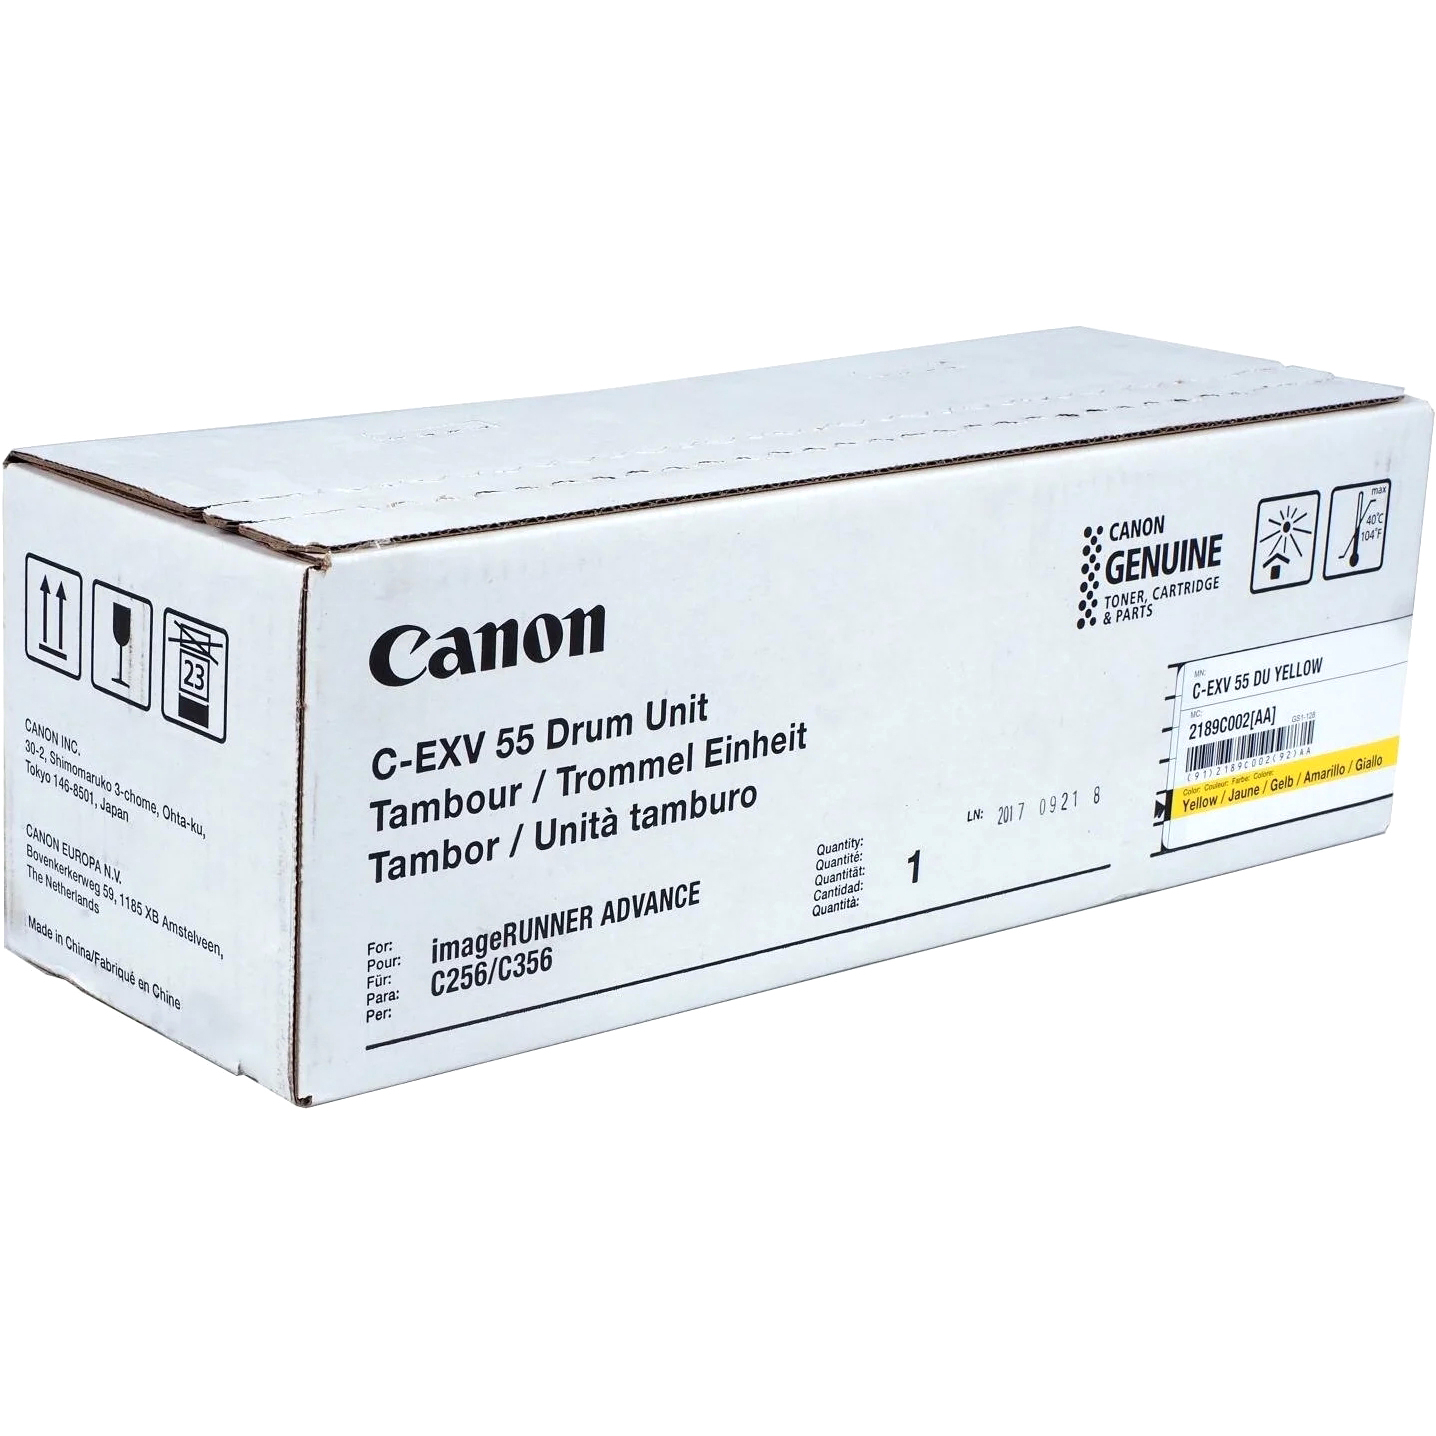  Canon C-EXV 55, 2189C002